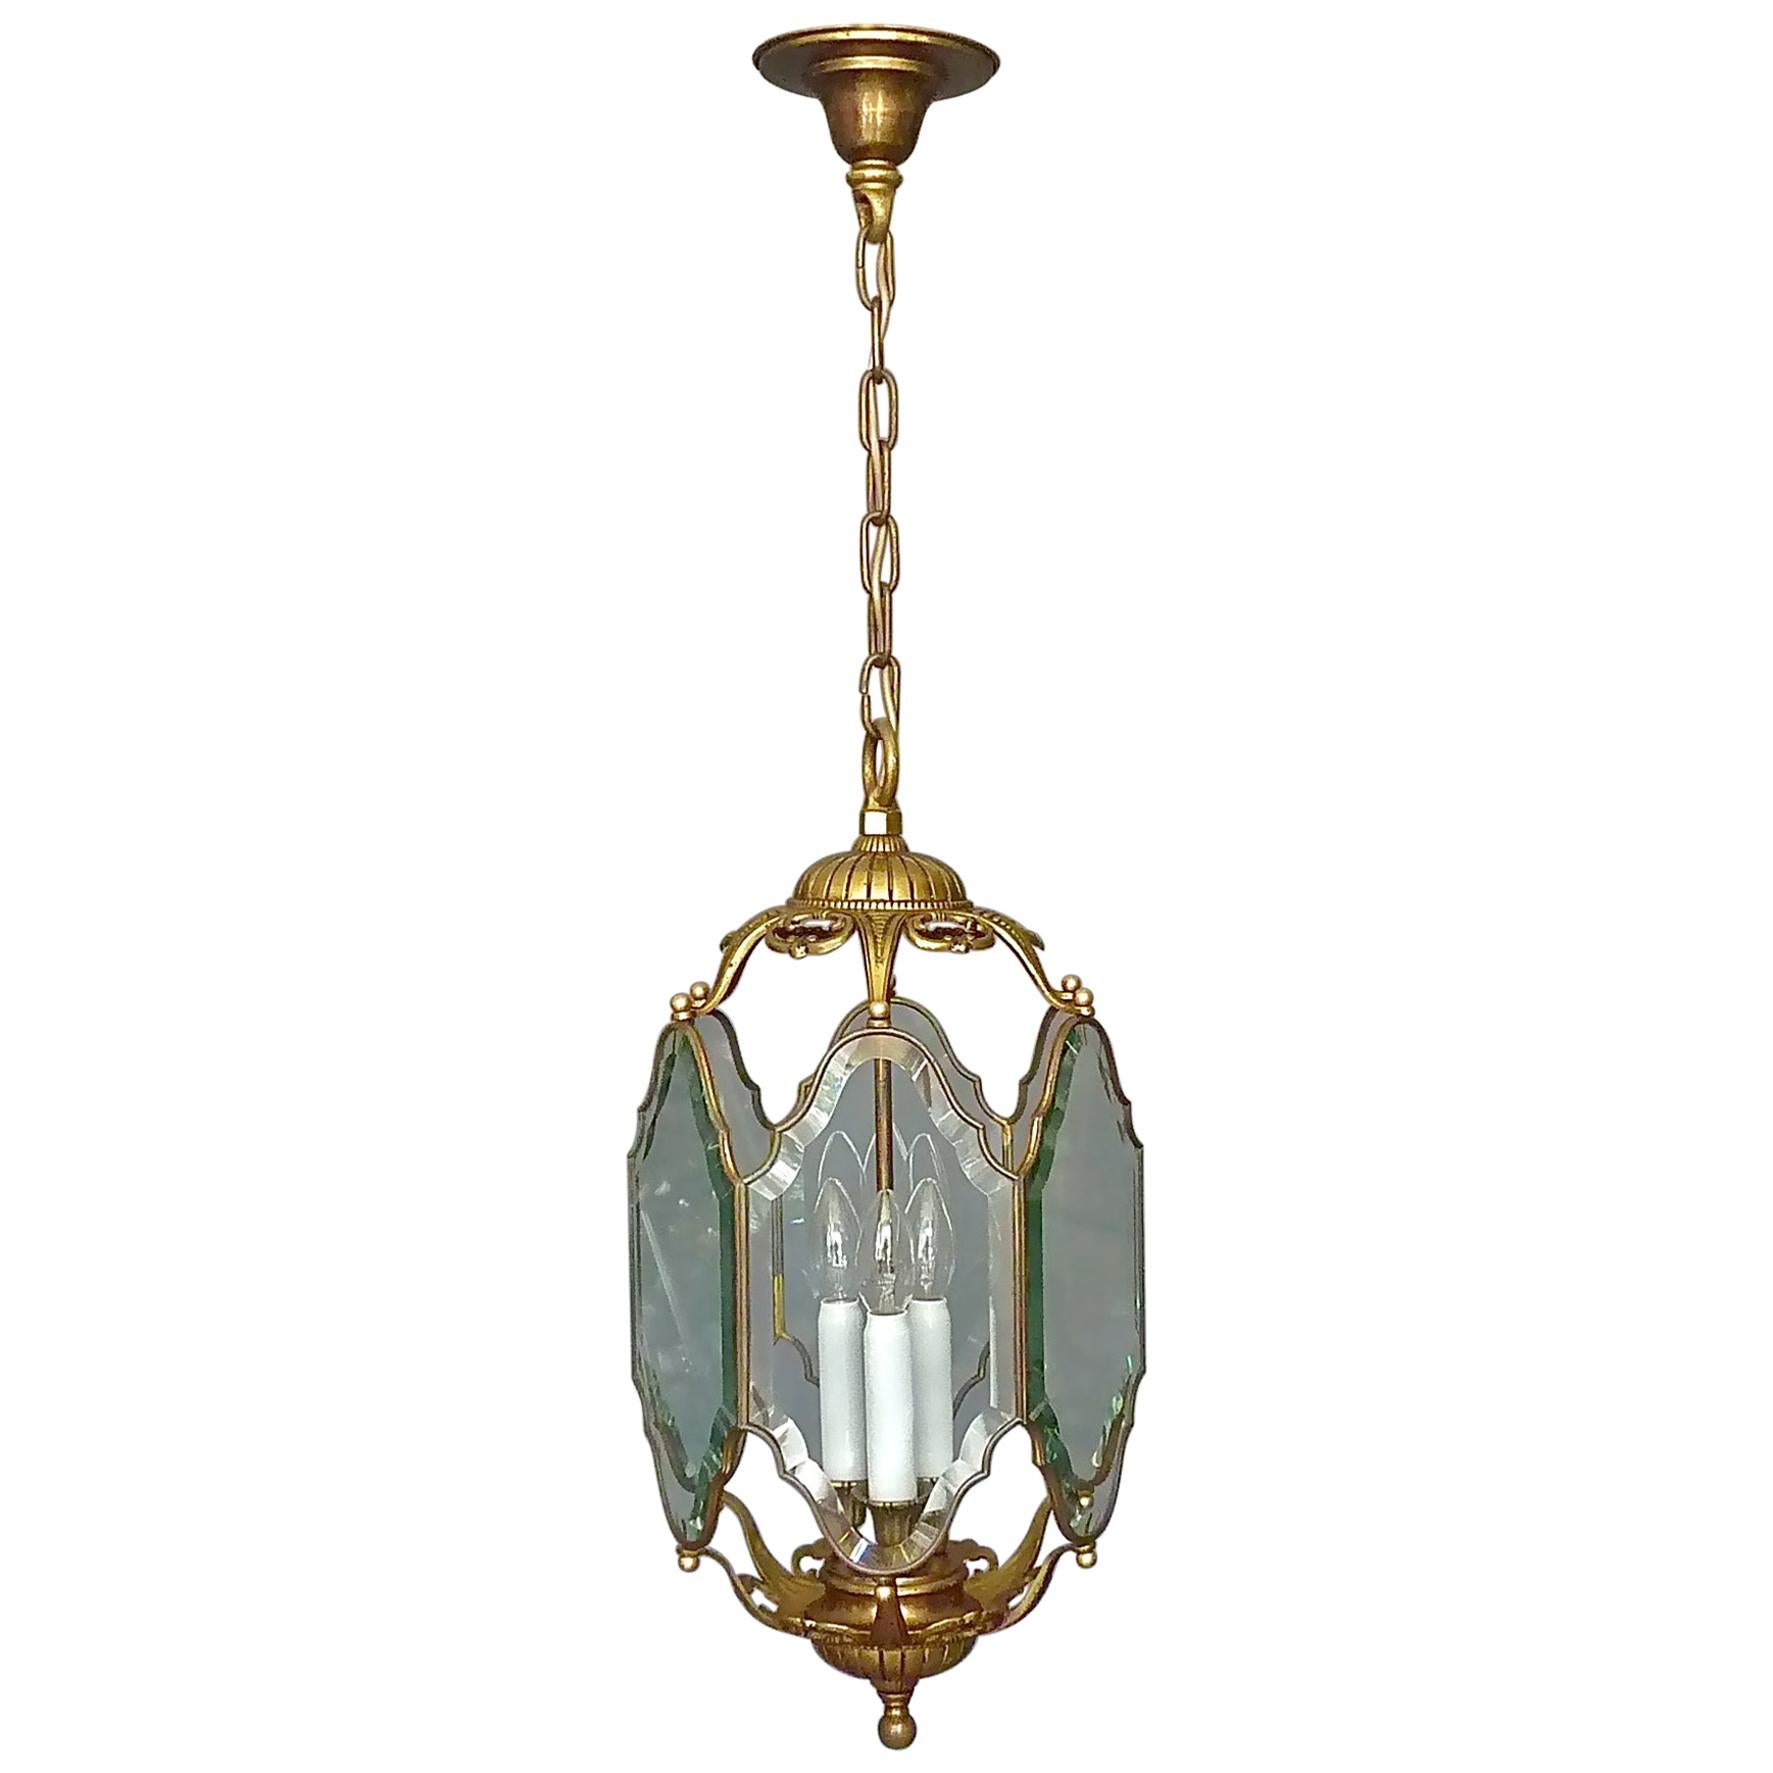 Große antike französische Laternenlampe aus facettiertem Kristallglas, Bronze und Messing, 1880 - 1900